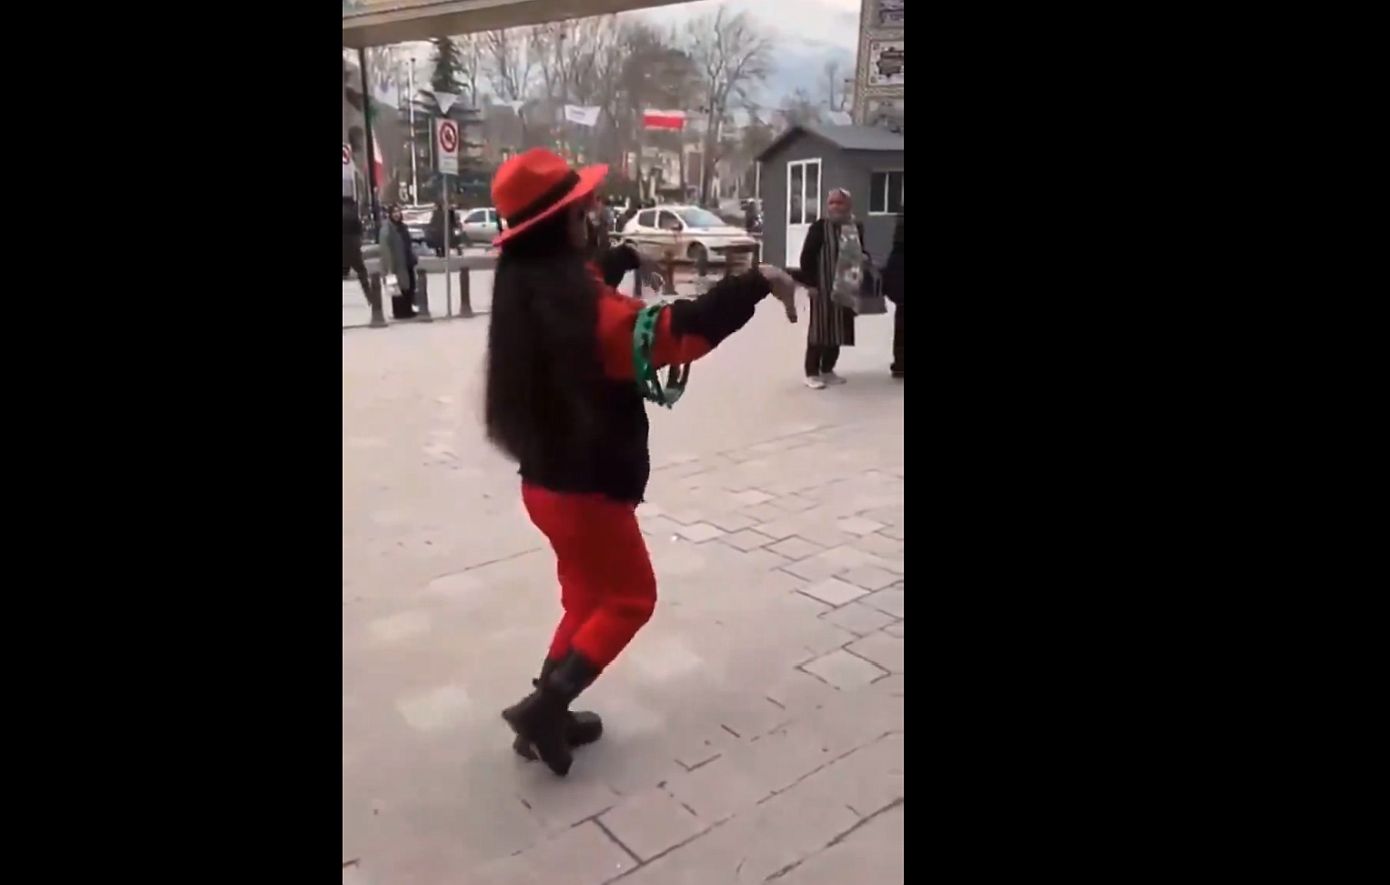 Δύο νεαρές γυναίκες συνελήφθησαν στο Ιράν μετά τη δημοσίευση βίντεο που τις δείχνει να χορεύουν δημοσίως